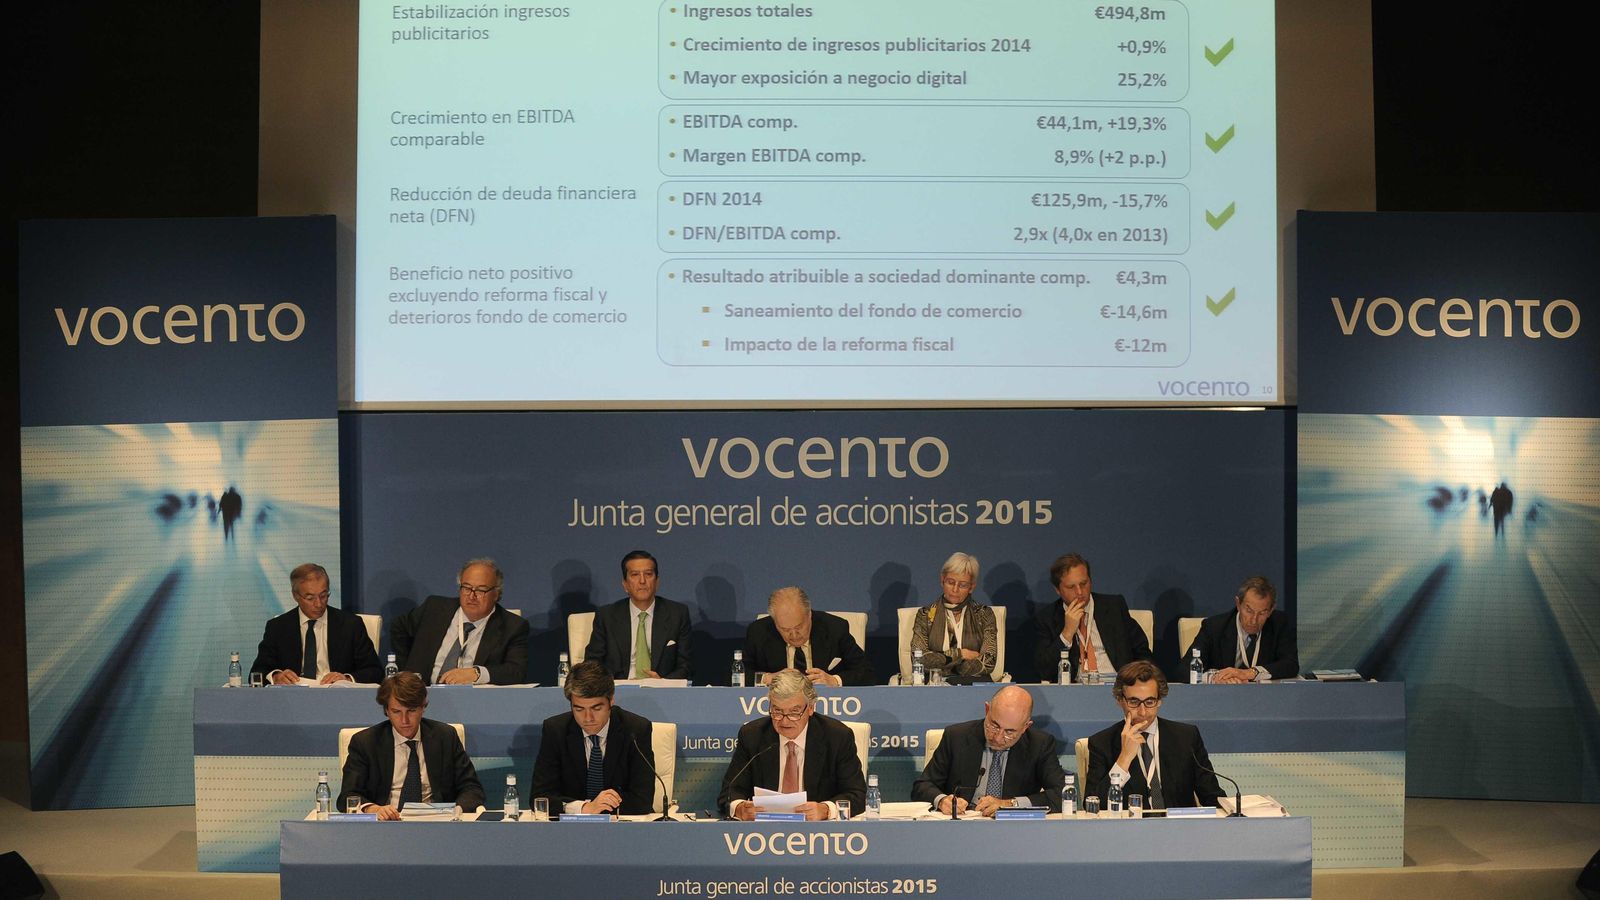 Foto: Santiago Bergareche y Luis Enríquez en la Junta General de Accionistas de Vocento 2015. (EC)